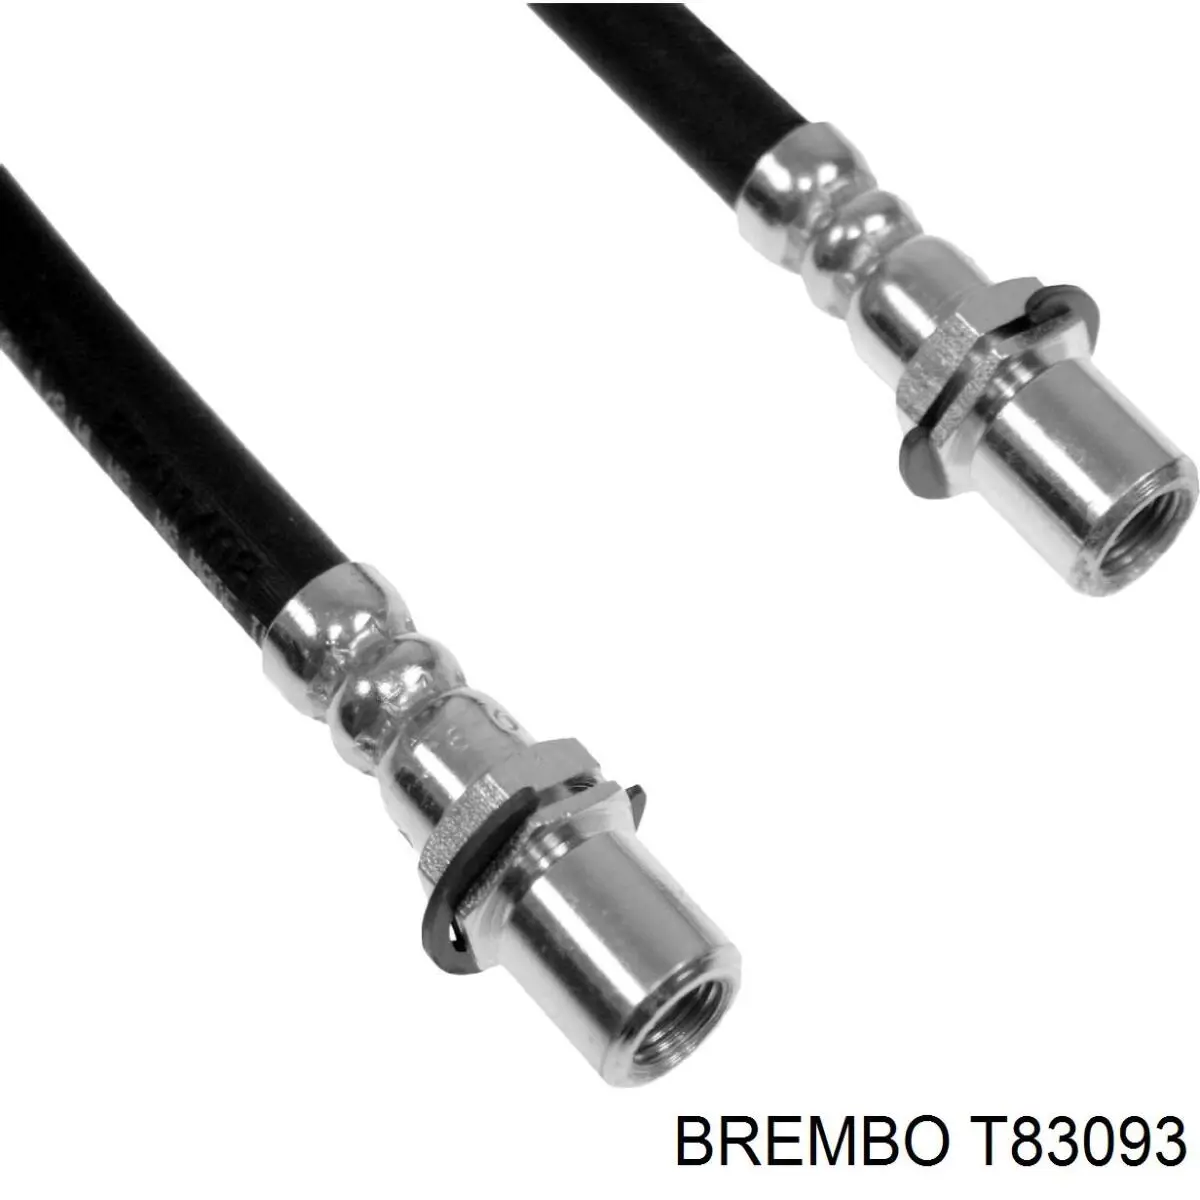 T83093 Brembo latiguillos de freno trasero derecho